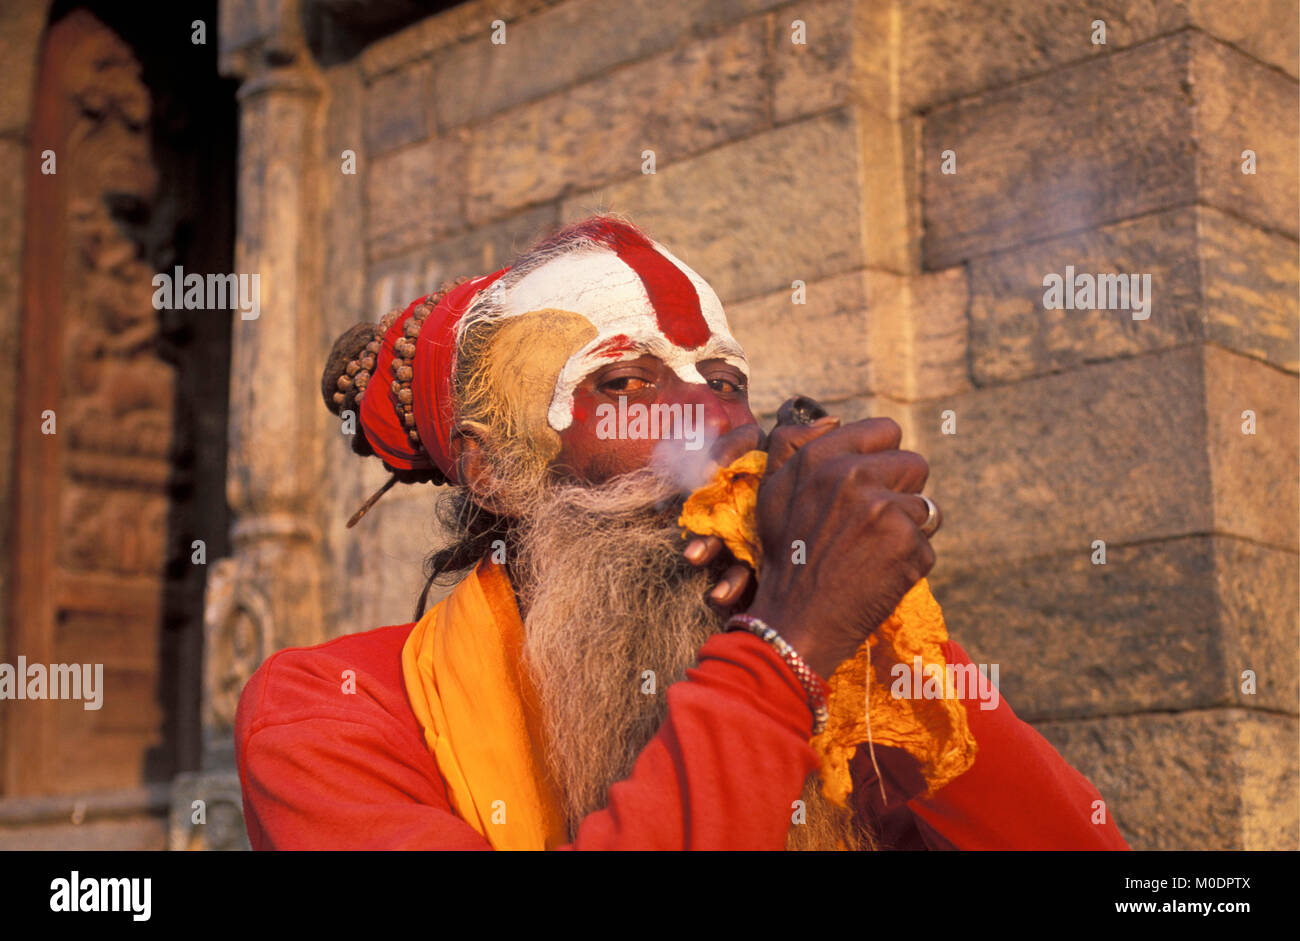 Nepal. Kathmandu. Pashupatinath temple (Hindu). Sadhu (holy man) by temple. Portrait. Stock Photo